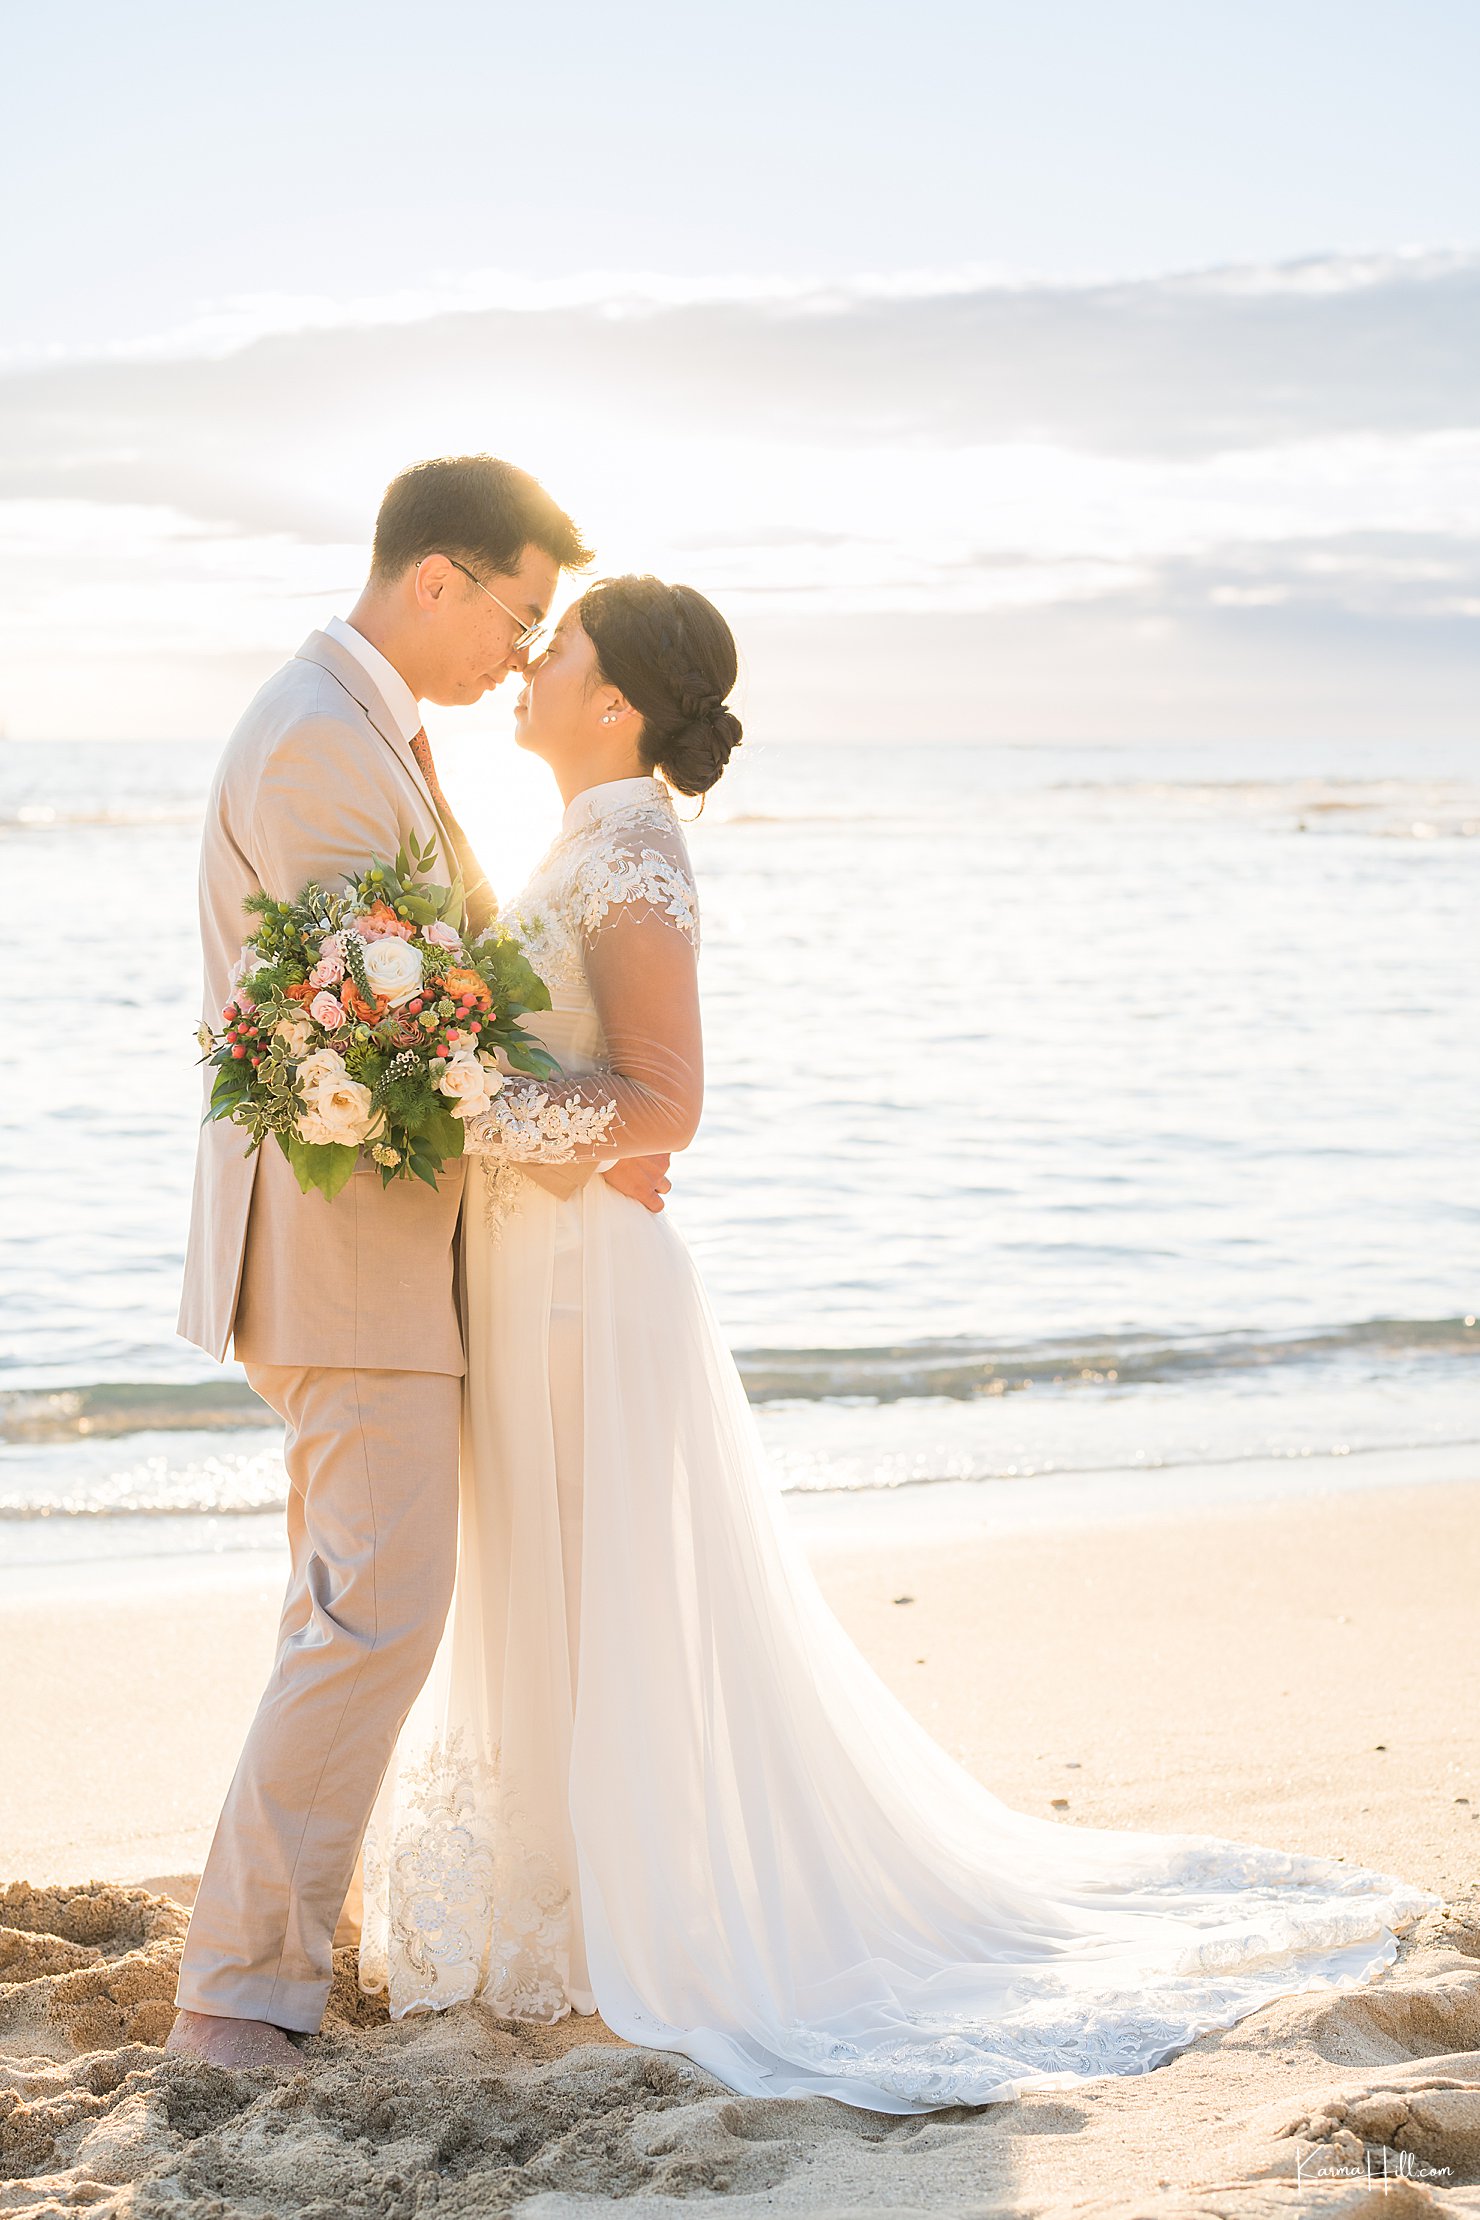 newlyweds on beach at sunset